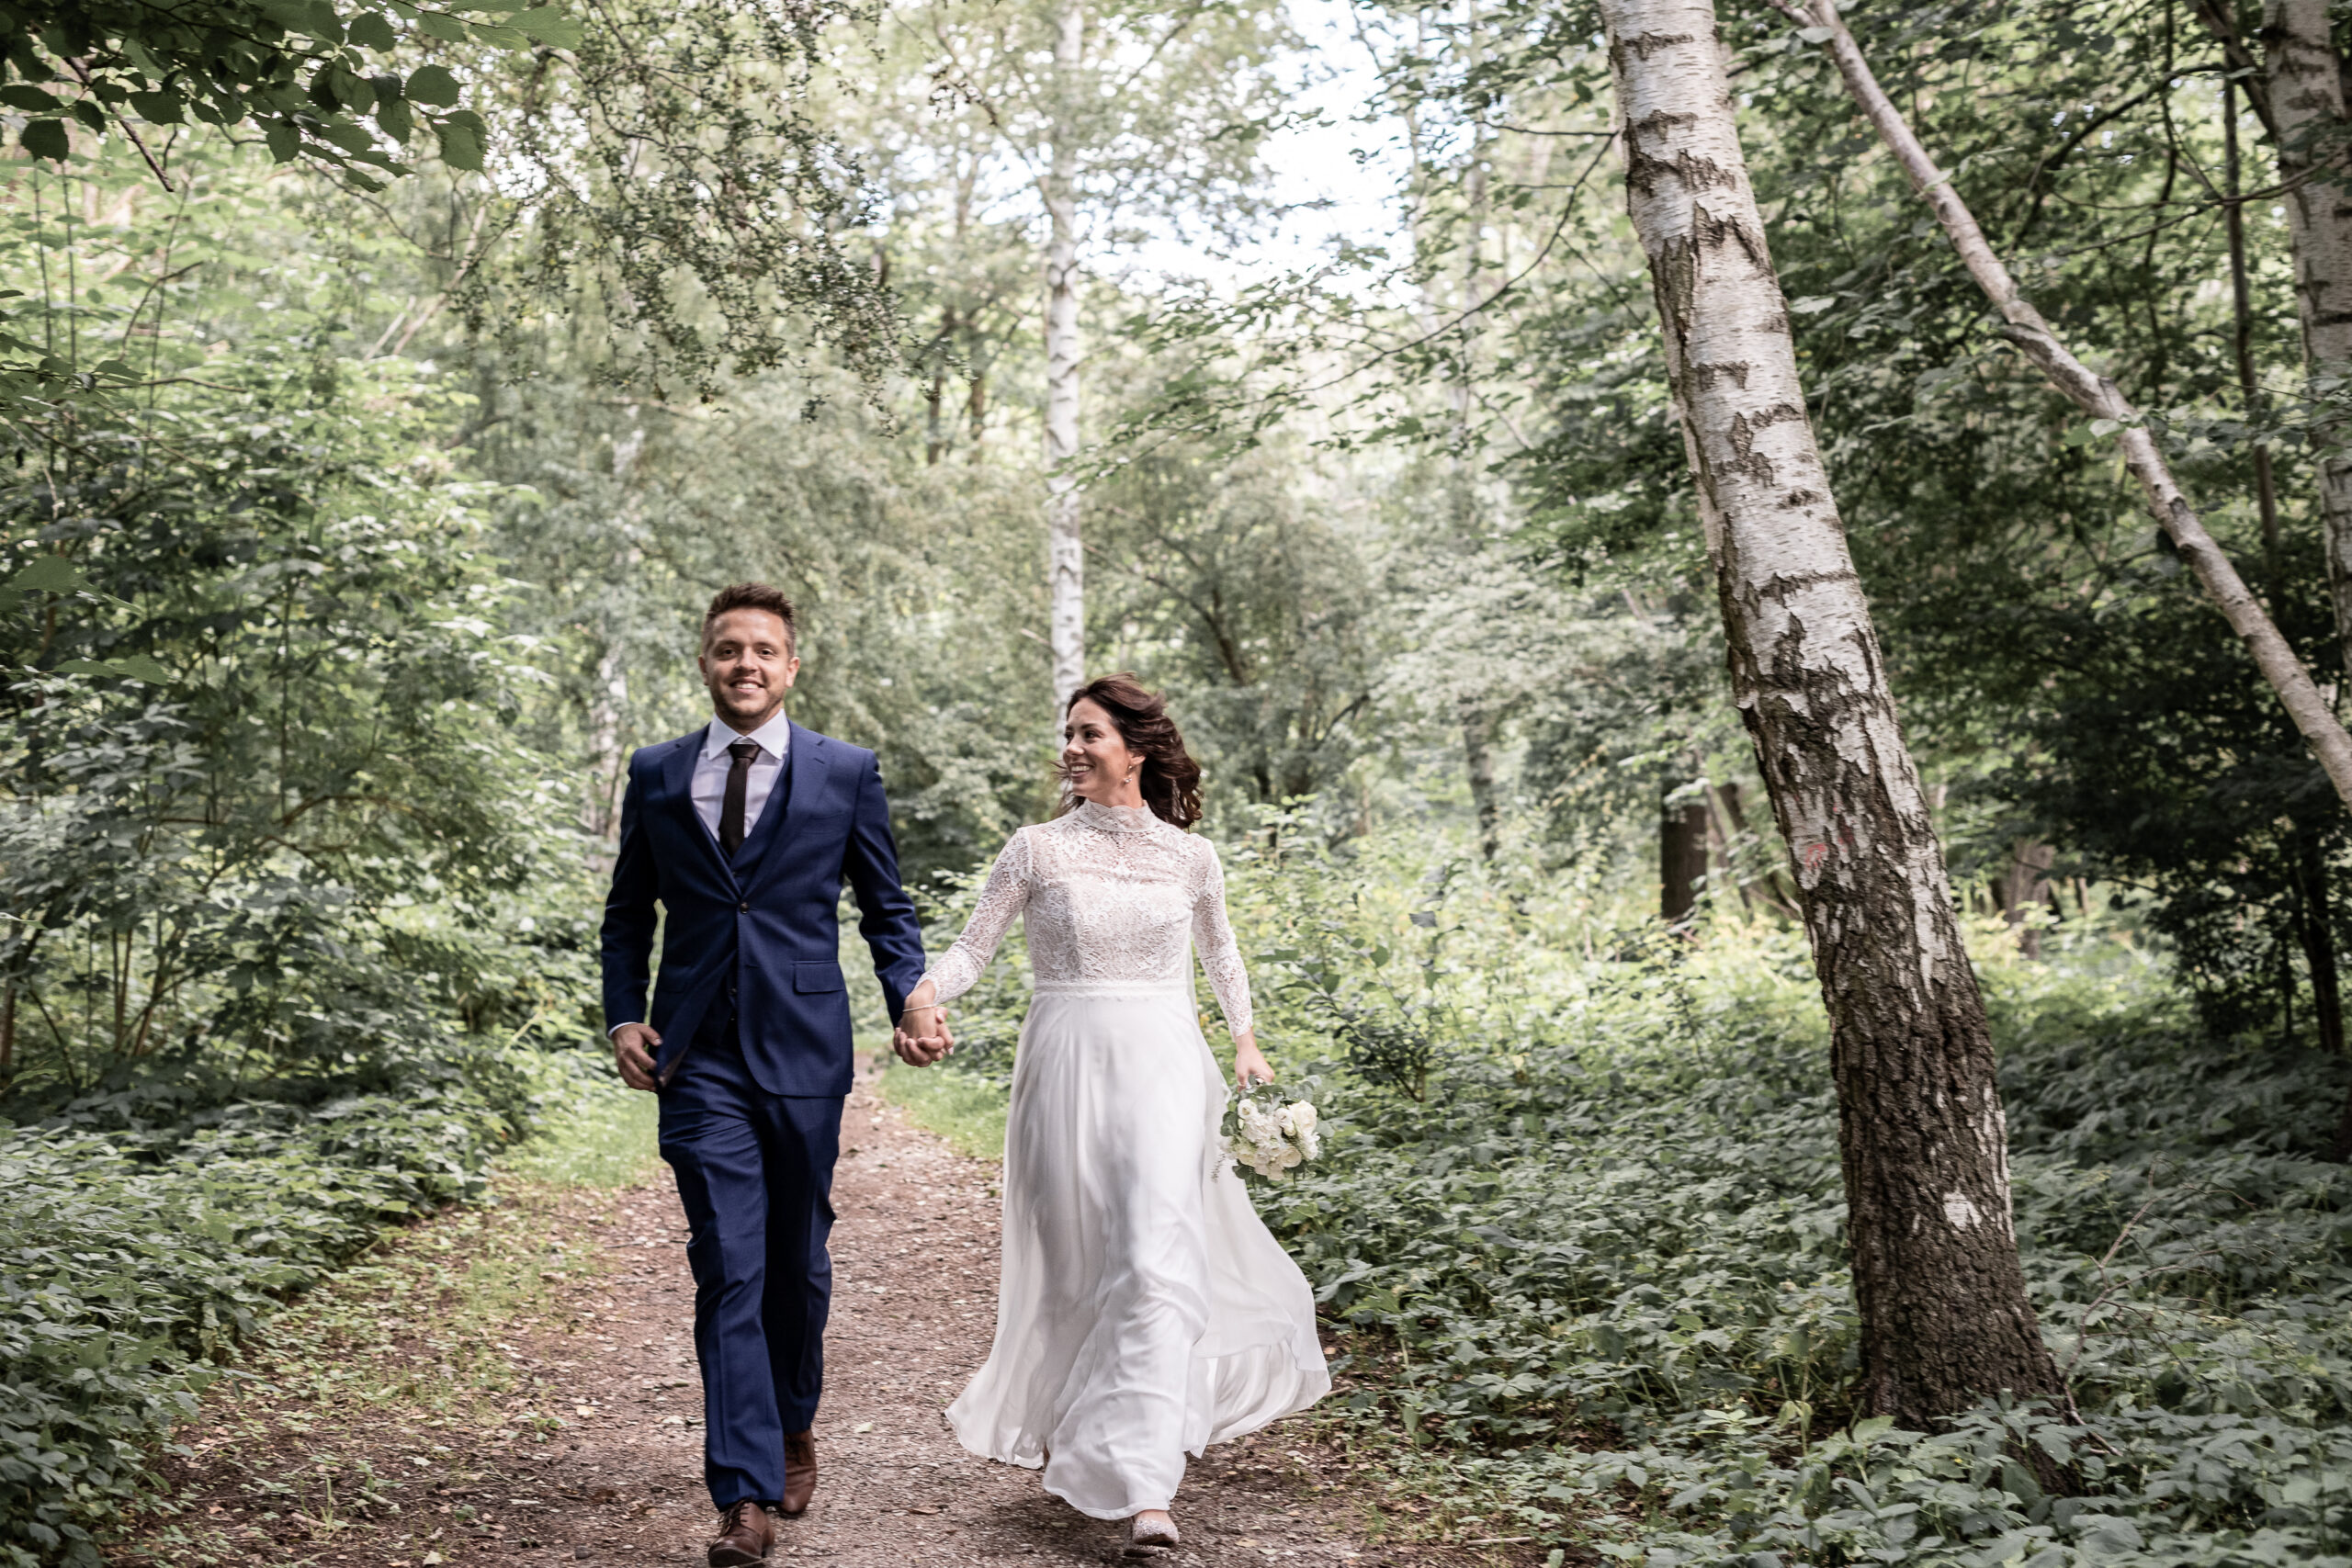 Bryllupsbilleder af brudepar der løber i skoven